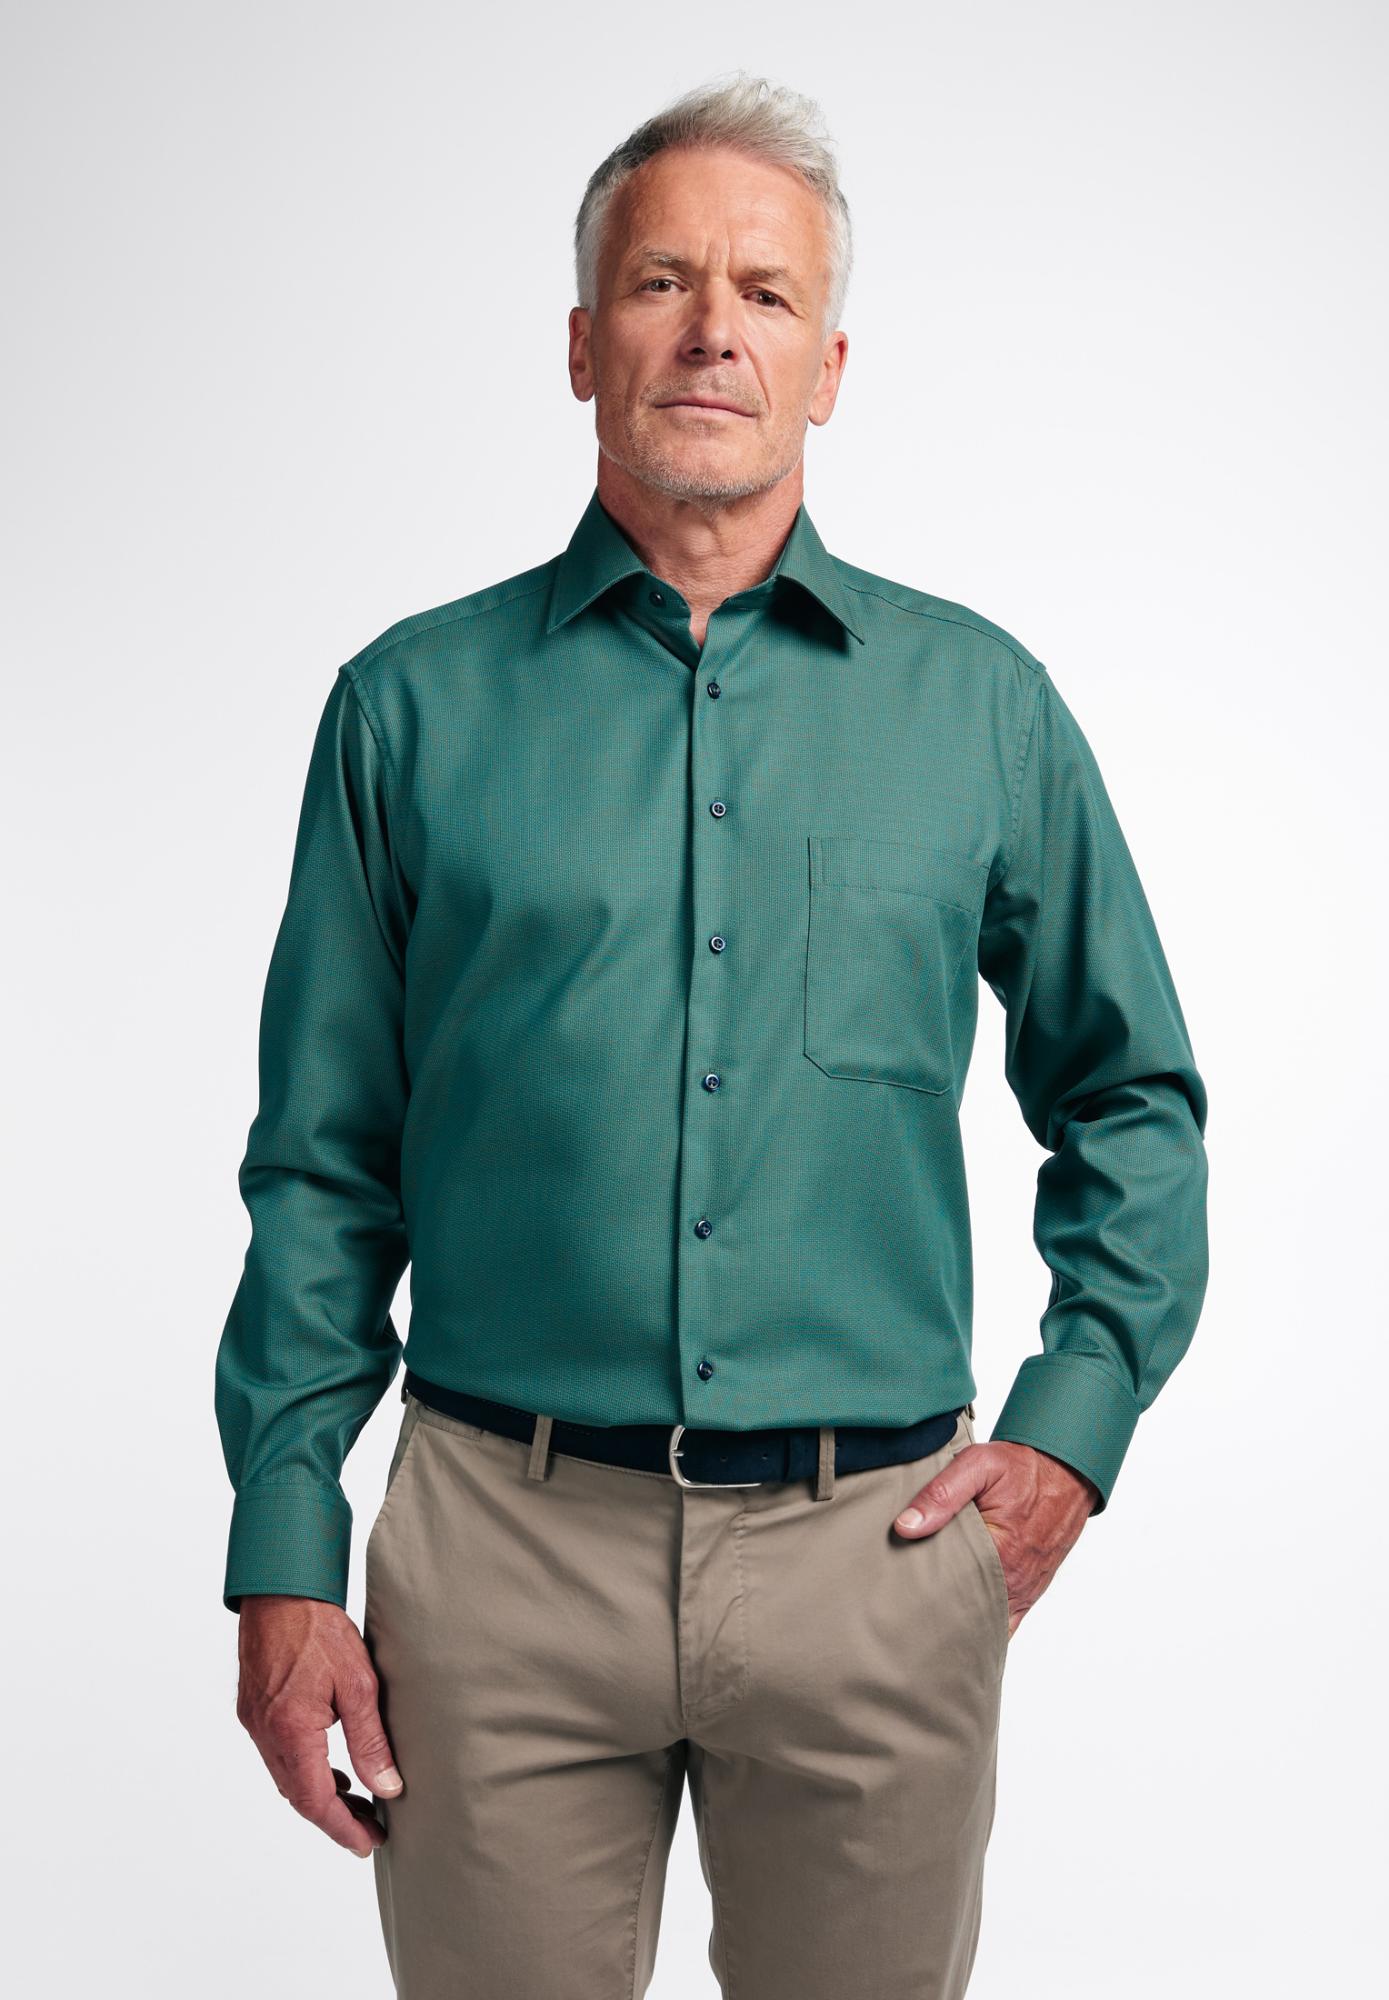 Мужская рубашка ETERNA, зеленая, цвет зеленый, размер 48 - фото 1